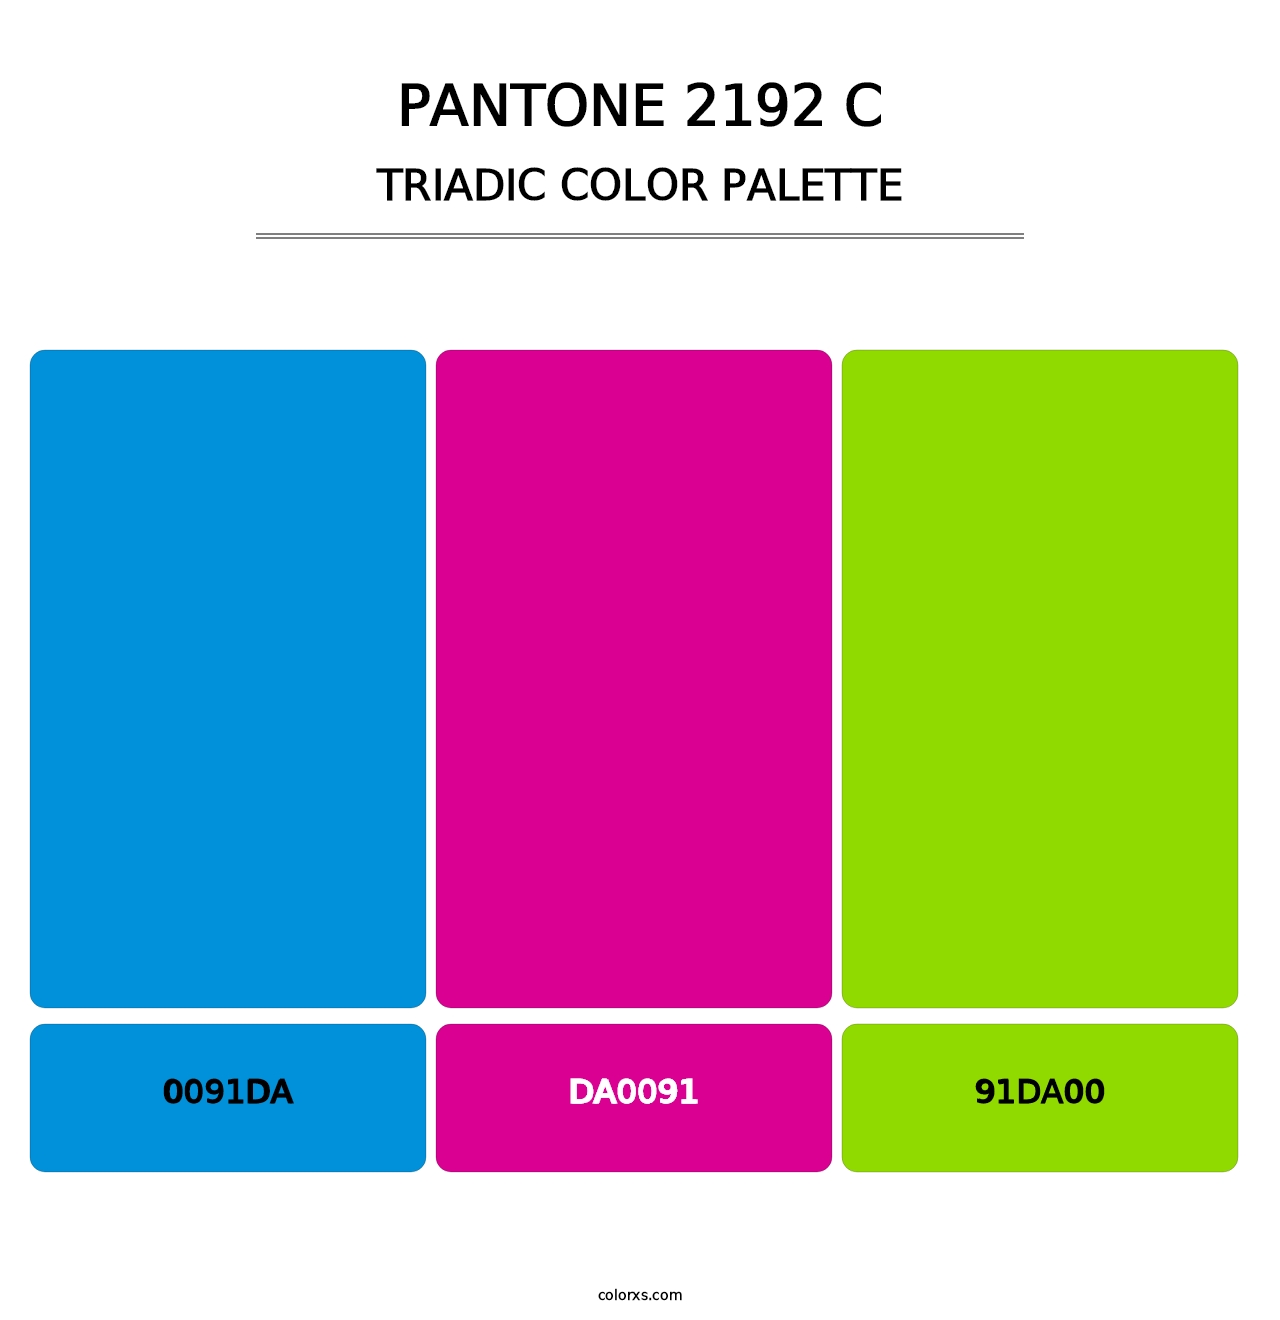 PANTONE 2192 C - Triadic Color Palette